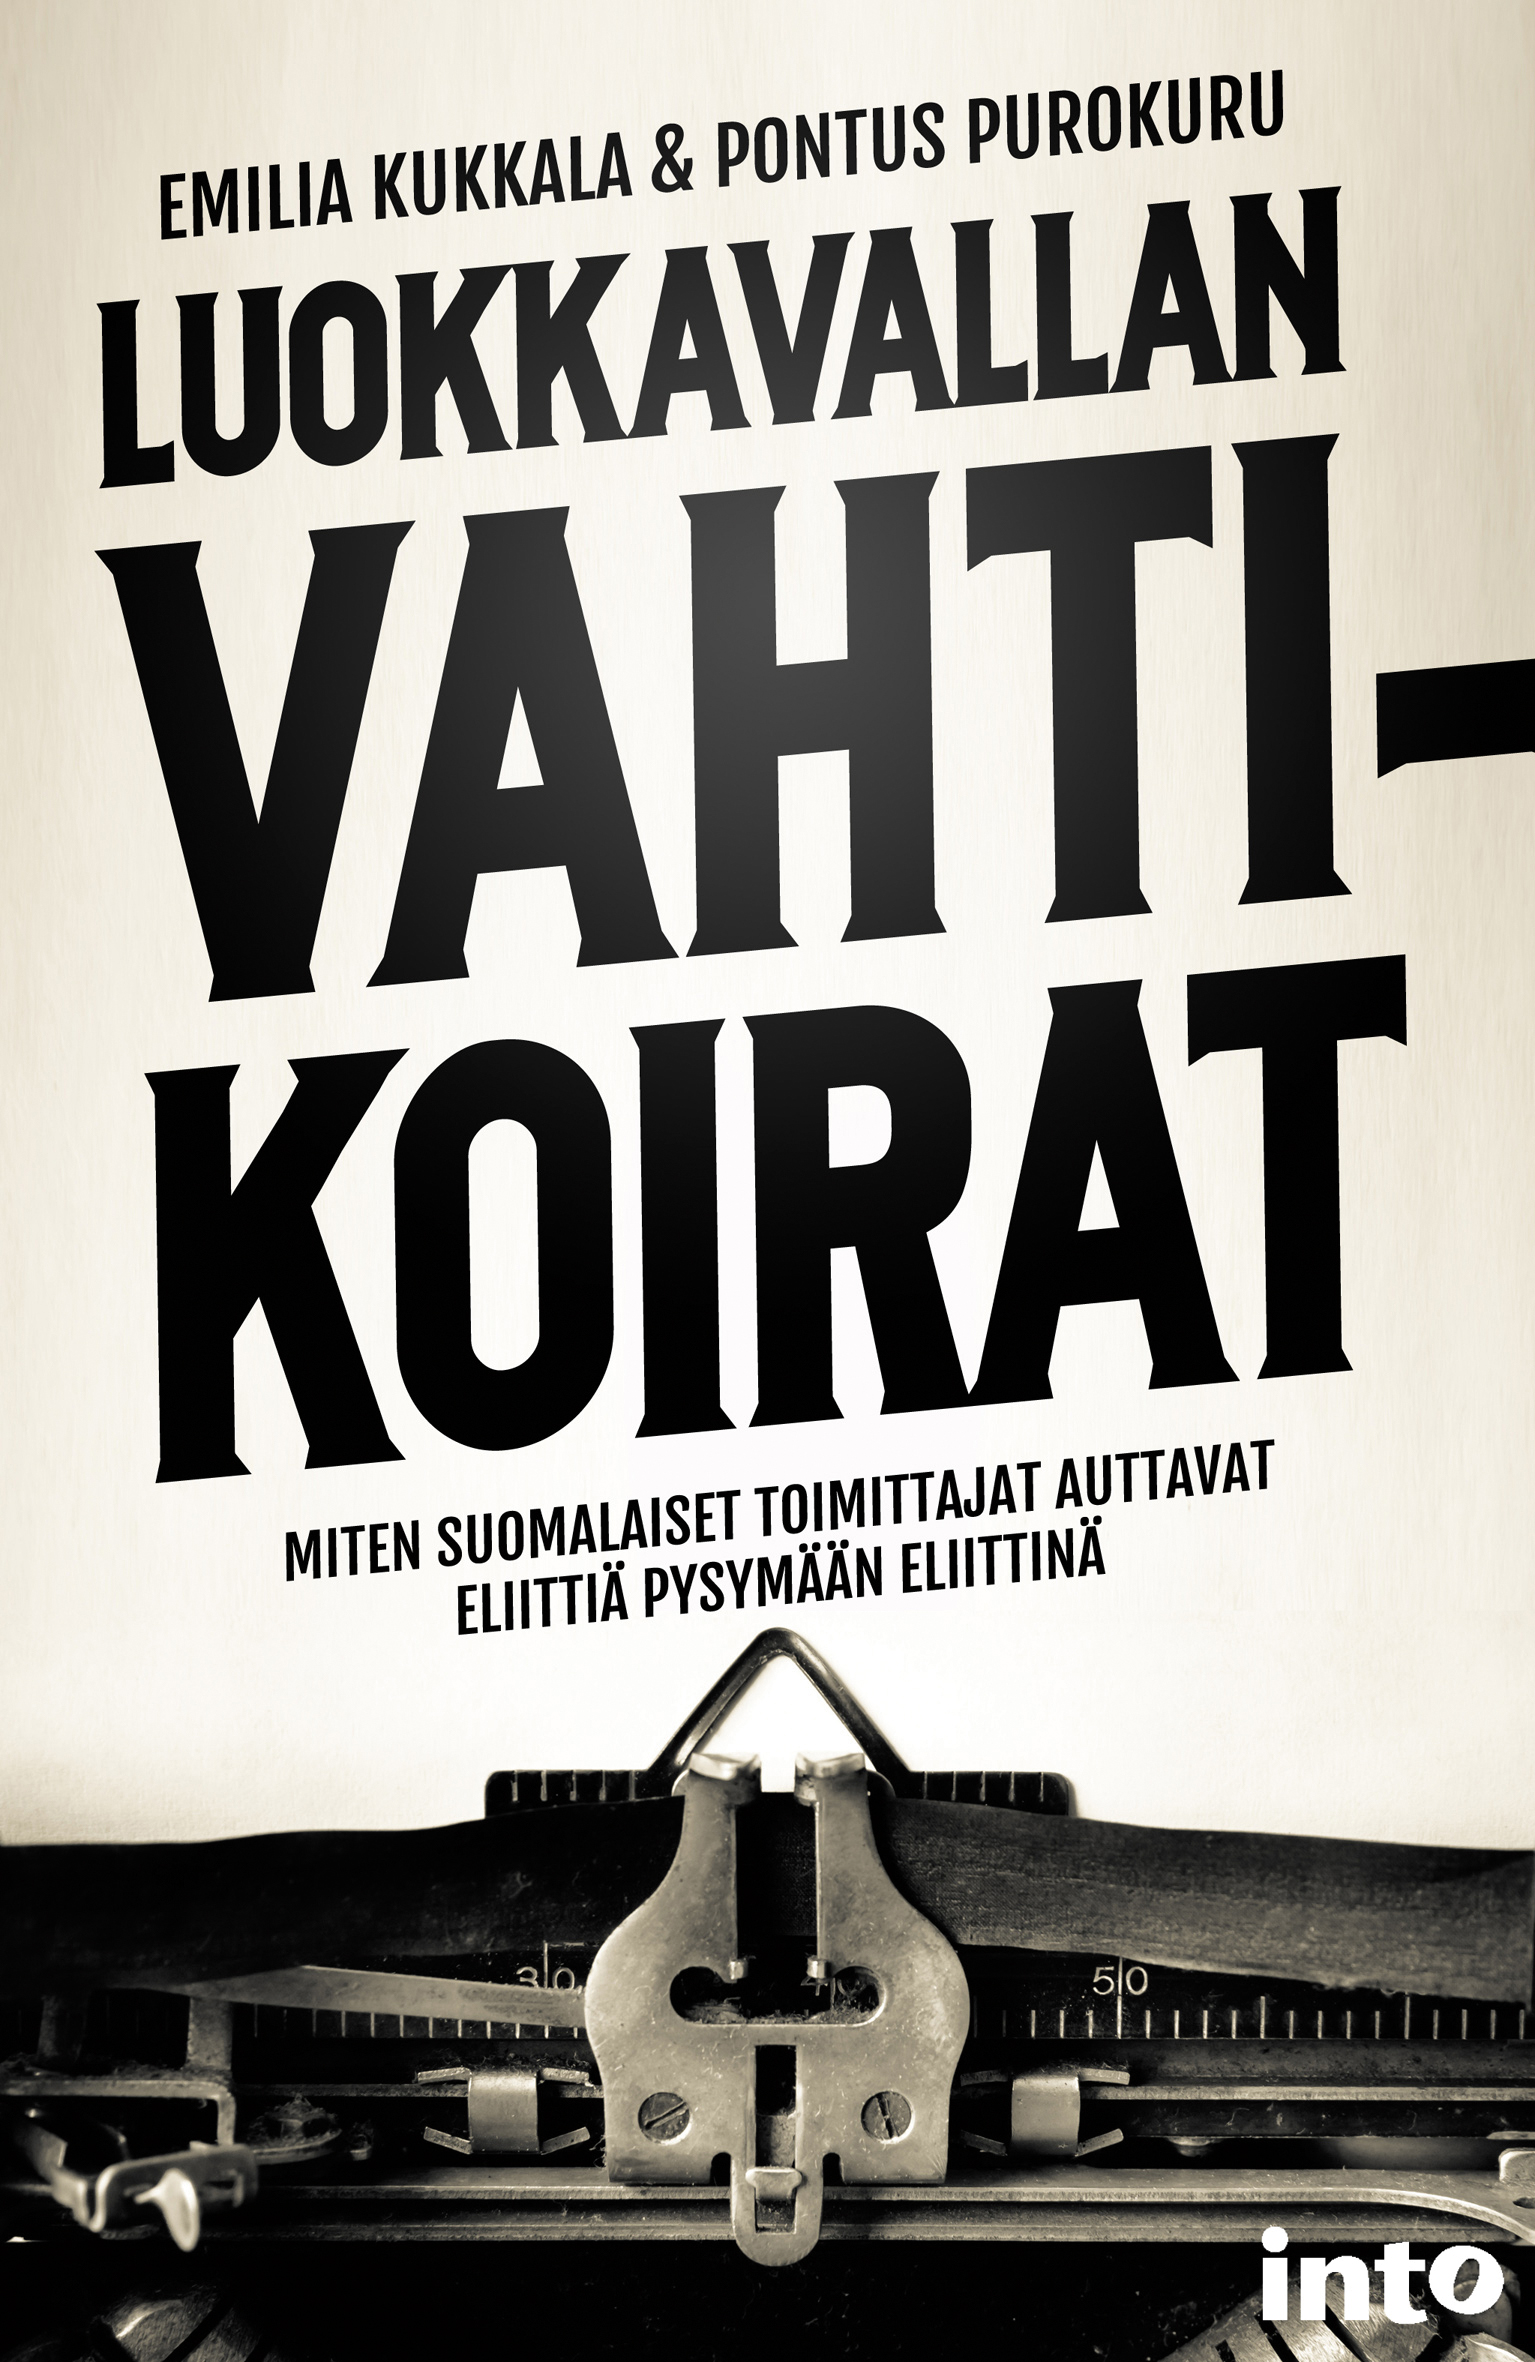 Pontus Purokuru, Emilia Kukkanen: Luokkavallan Vahtikoirat (Finnish language, Into Kustannus Oy)